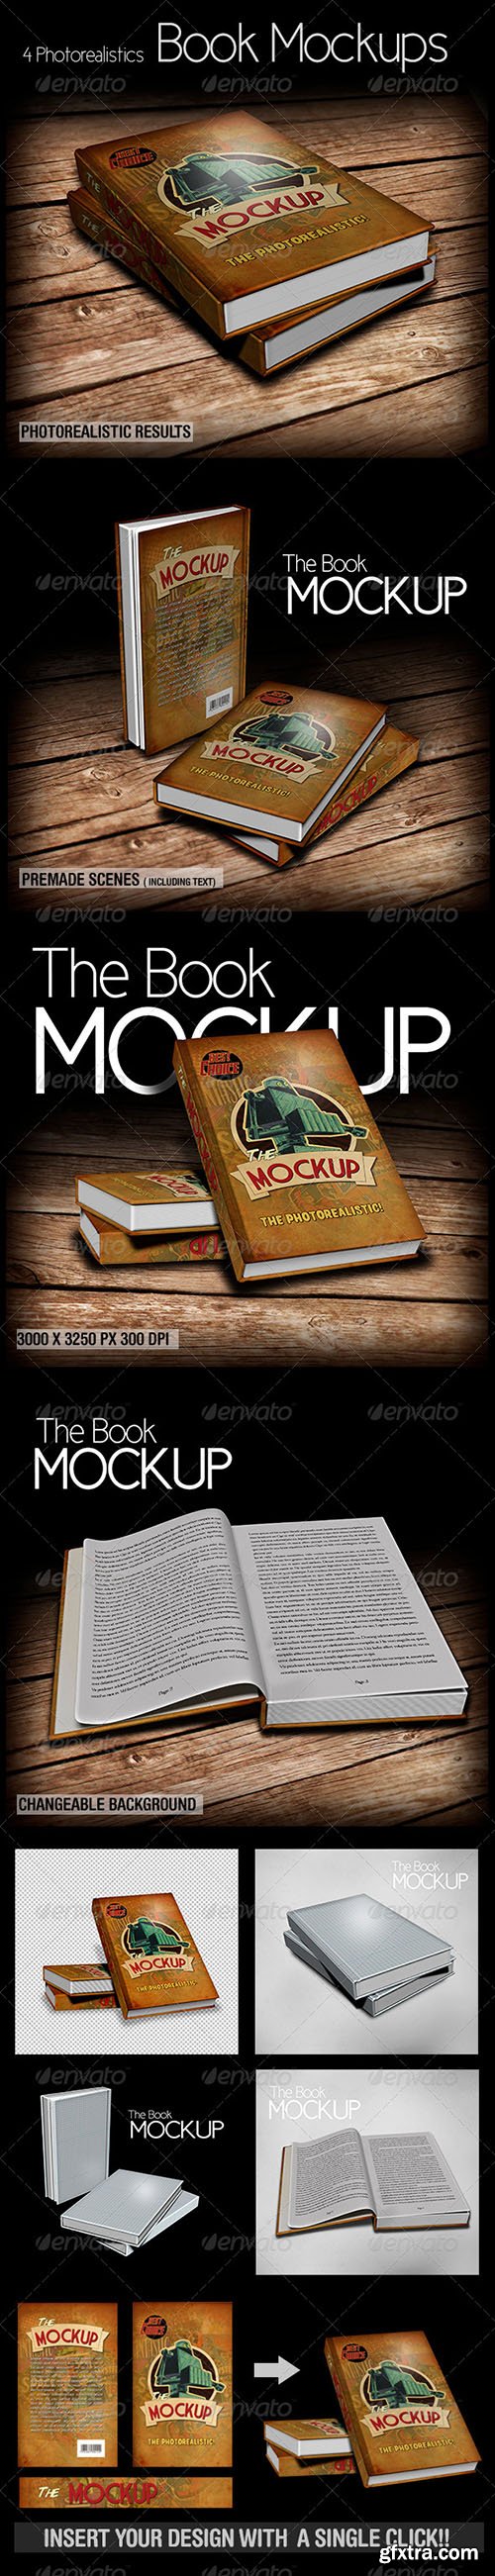 GraphicRiver The Book Mockup 6077778